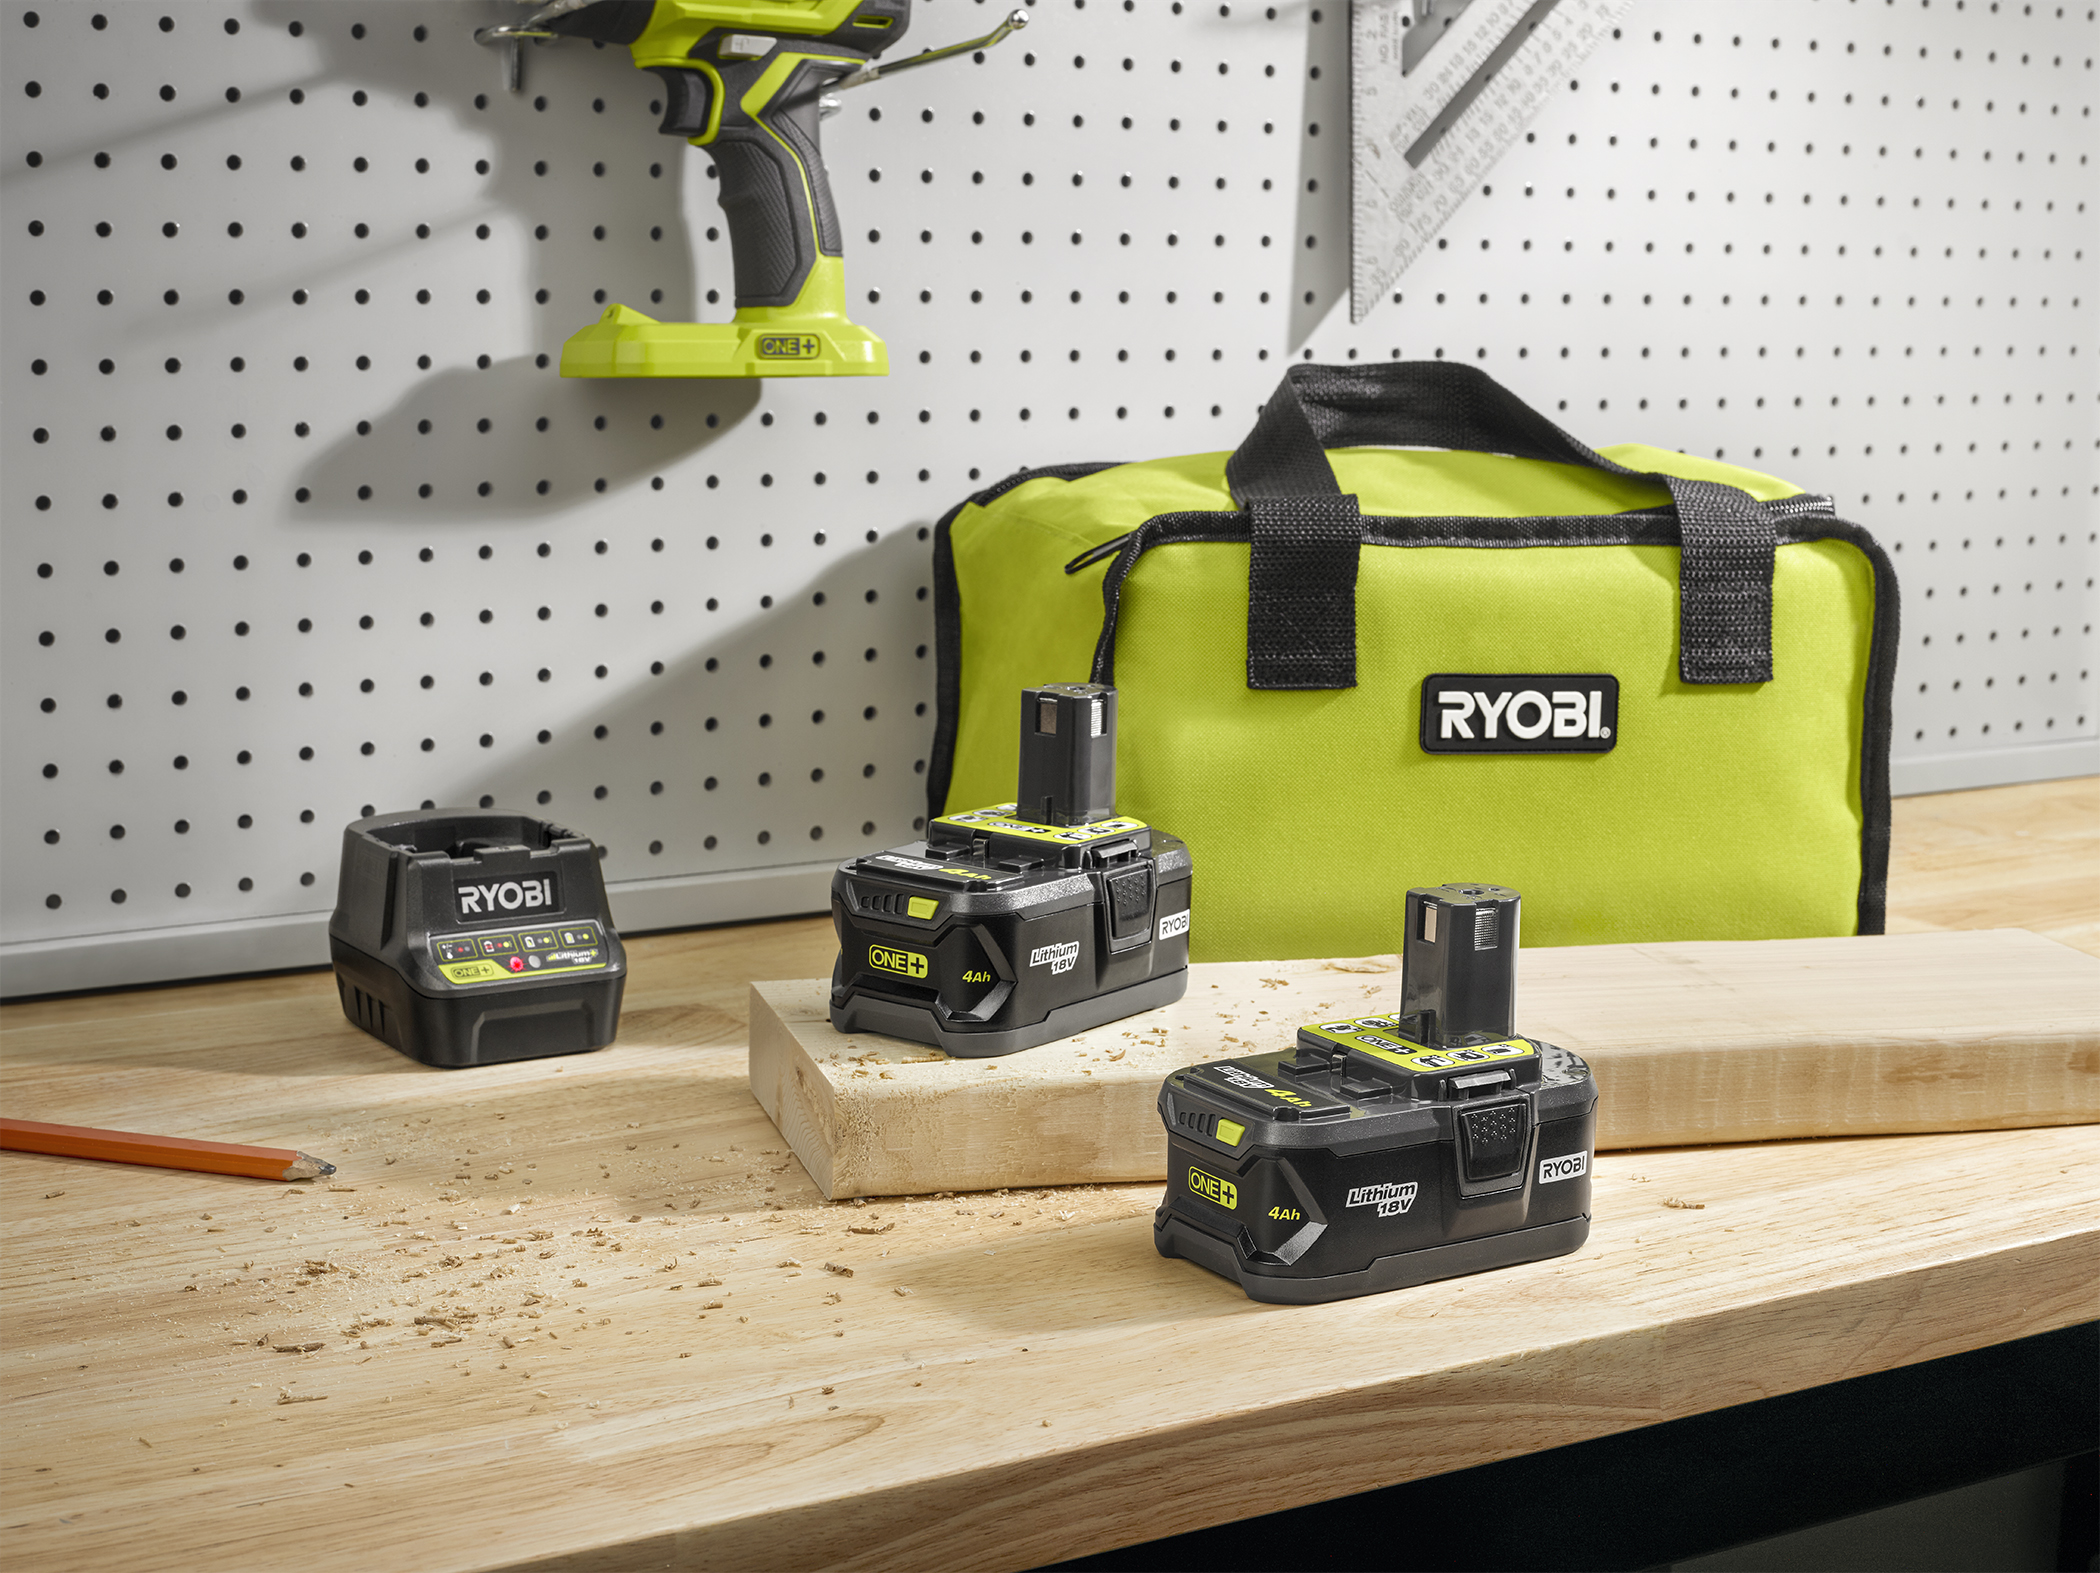 RYOBI 18V ONE+ Kit de clé à chocs 1/2 pouce sans fil avec batterie 4.0 Ah  et chargeur